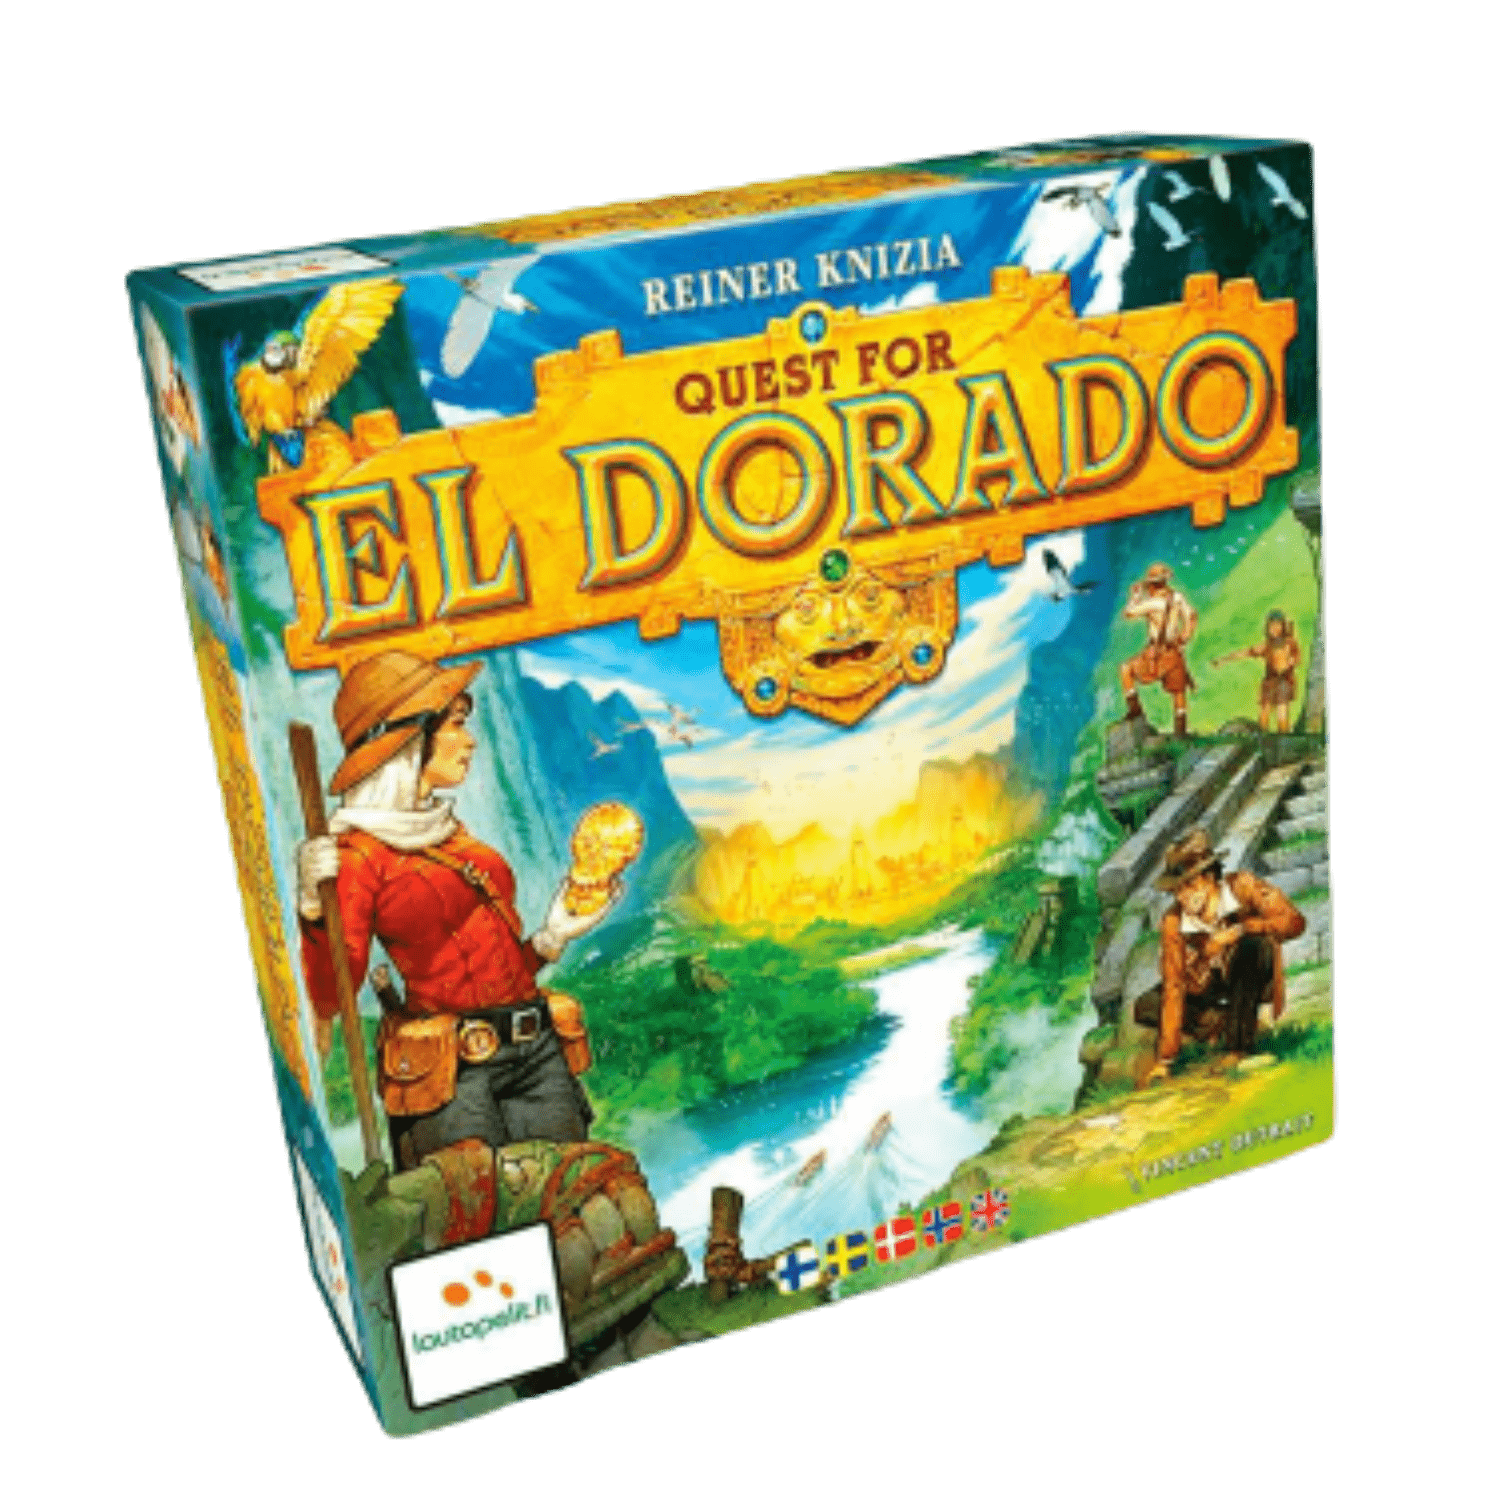 La Course vers El Dorado